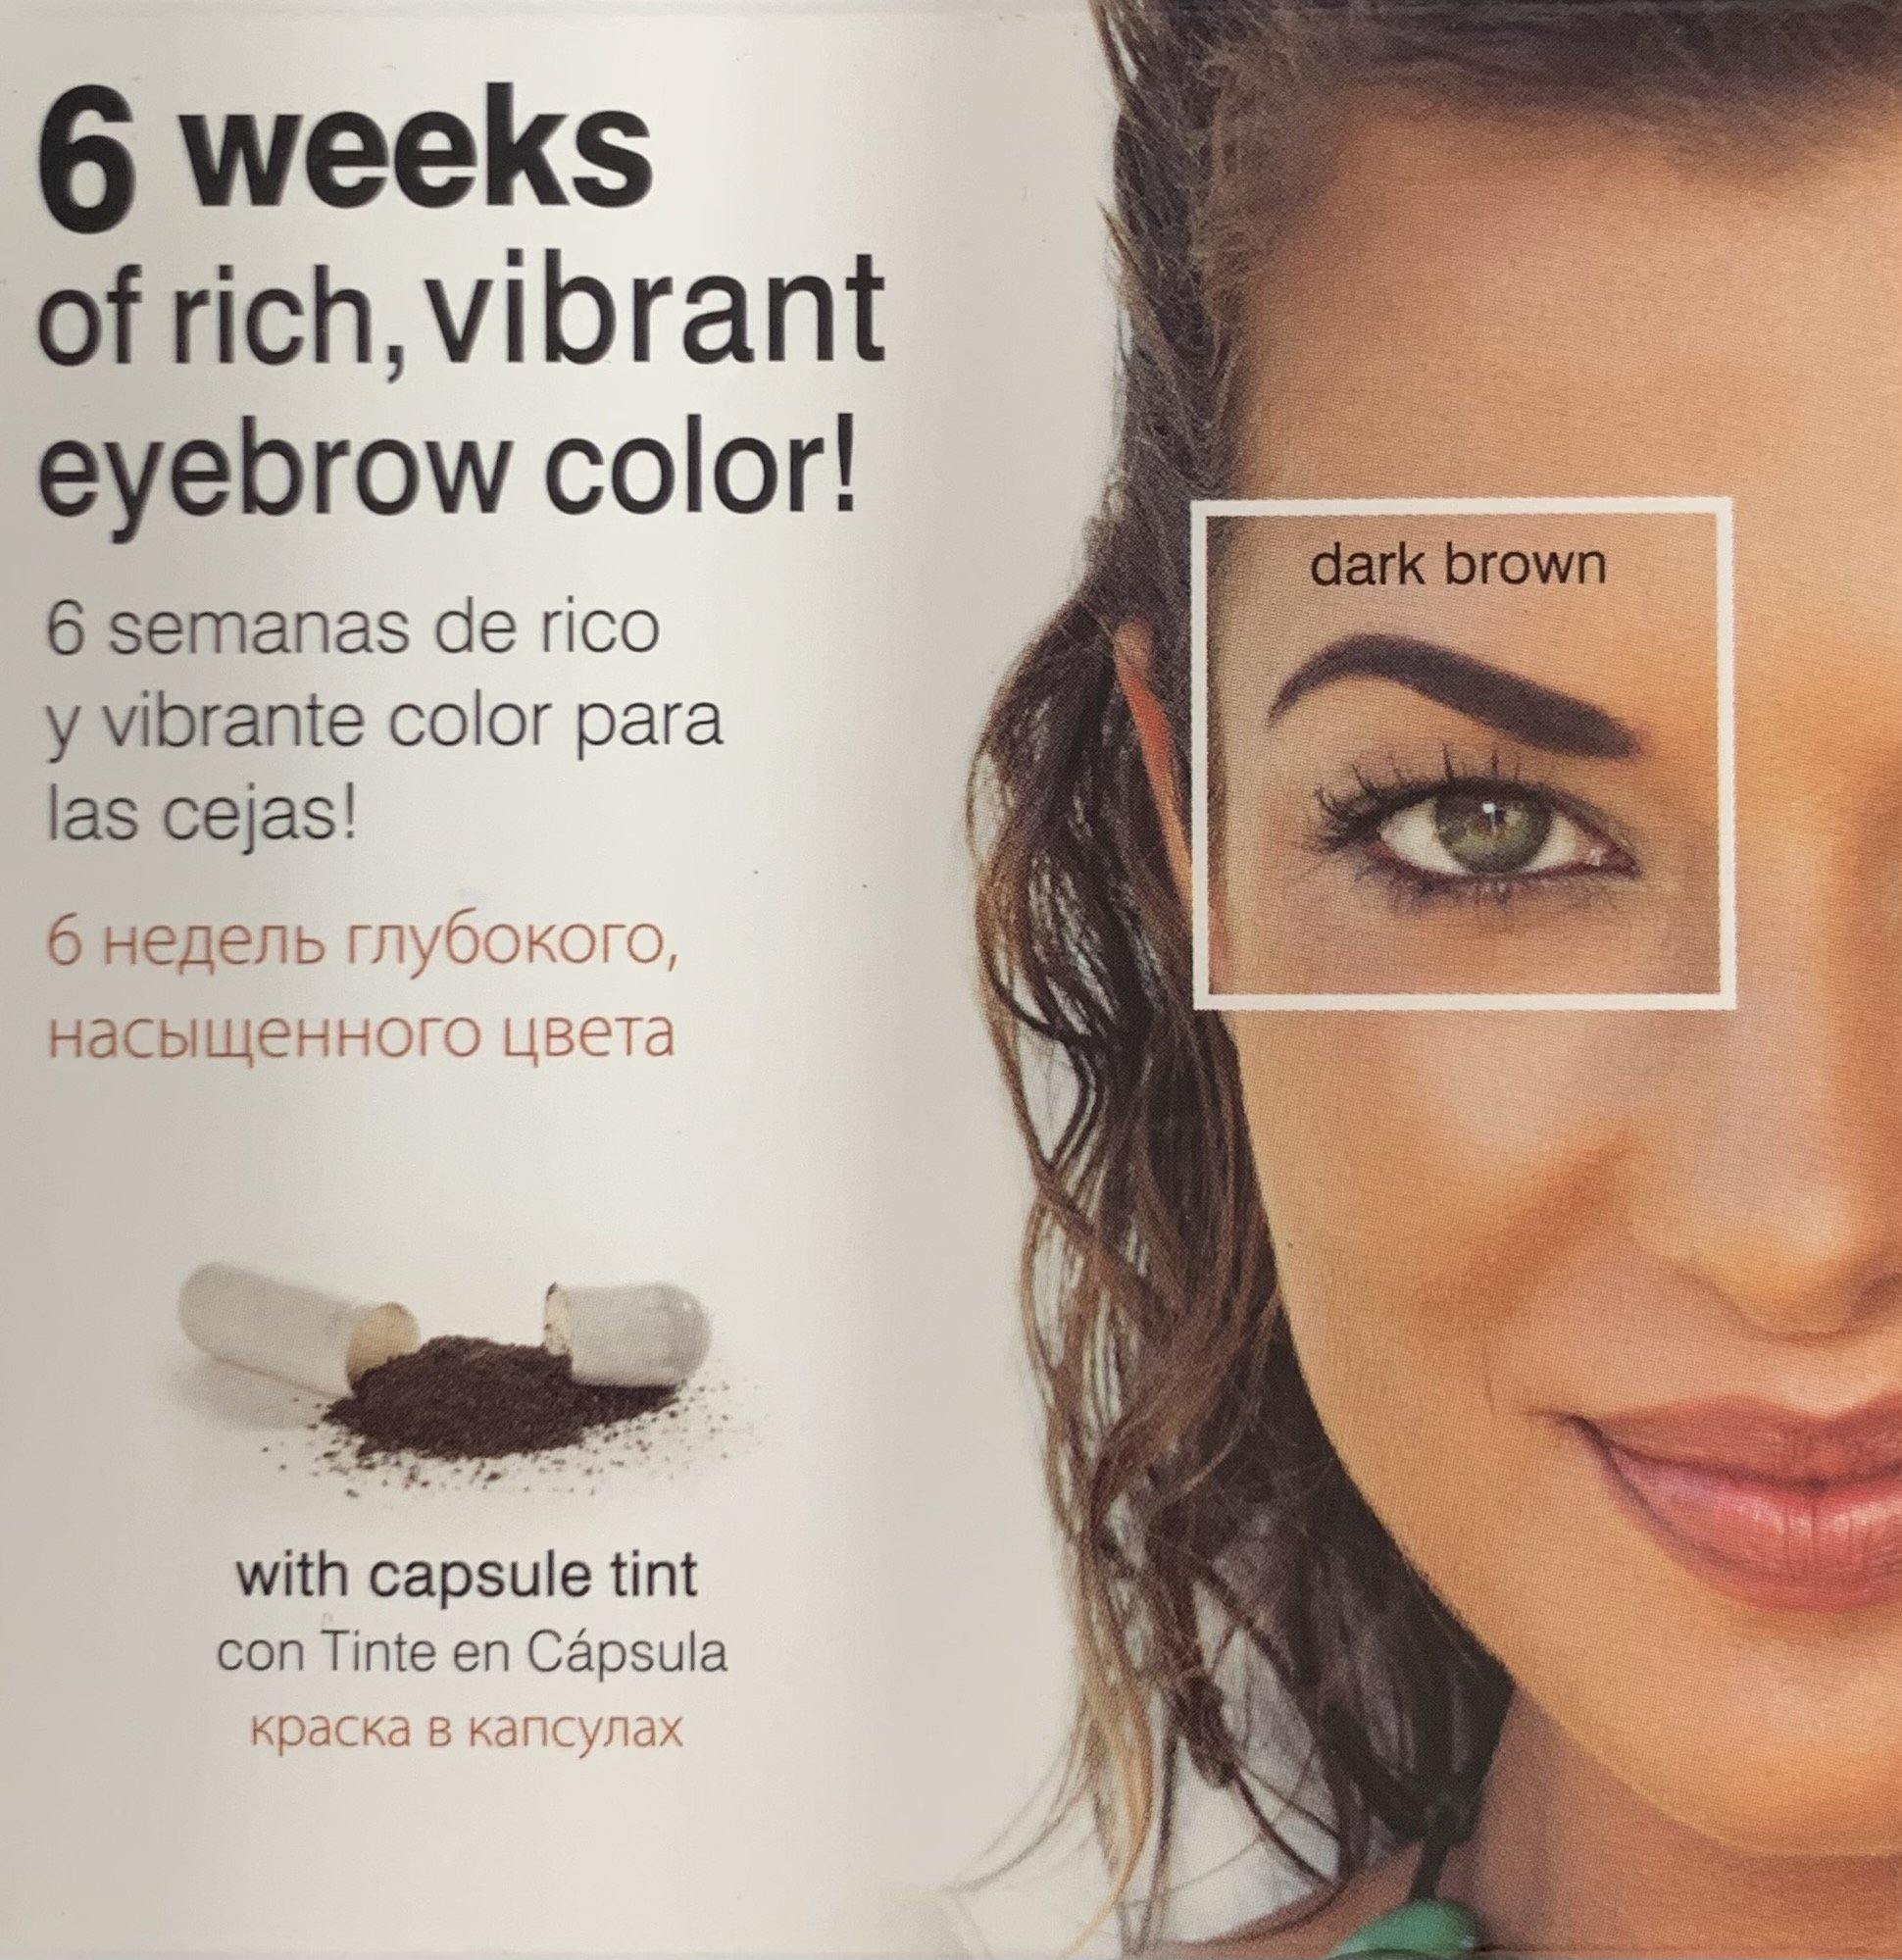 Godefroy Instant Eye Brow Tint Kit 6 Weeks Dark Brown